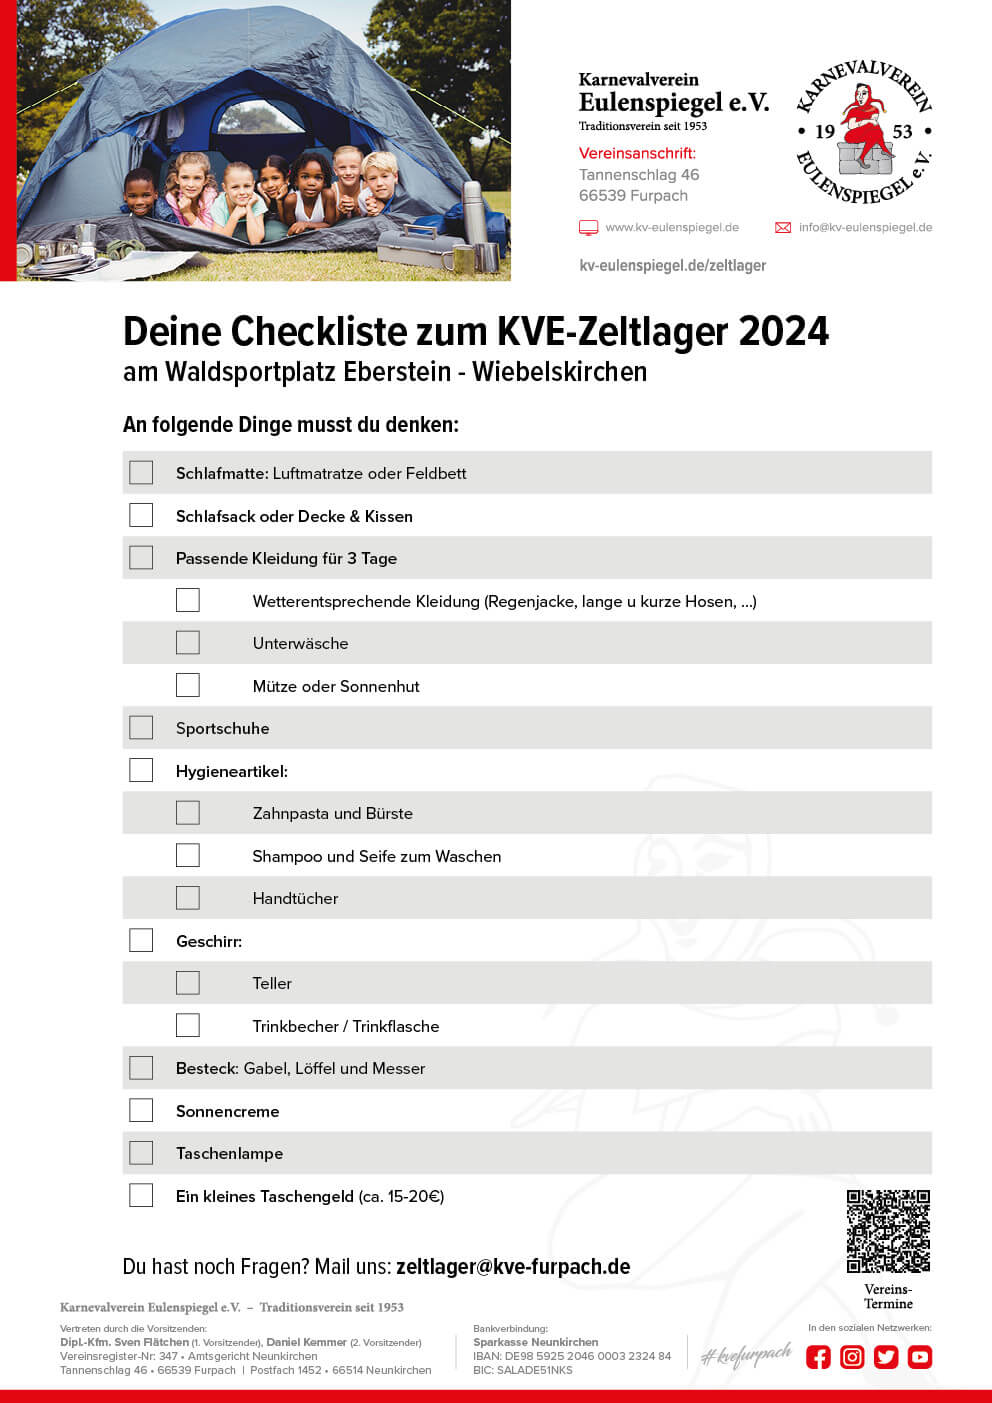 Checkliste Zeltager 2024 Karnevalverein Eulenspiegel